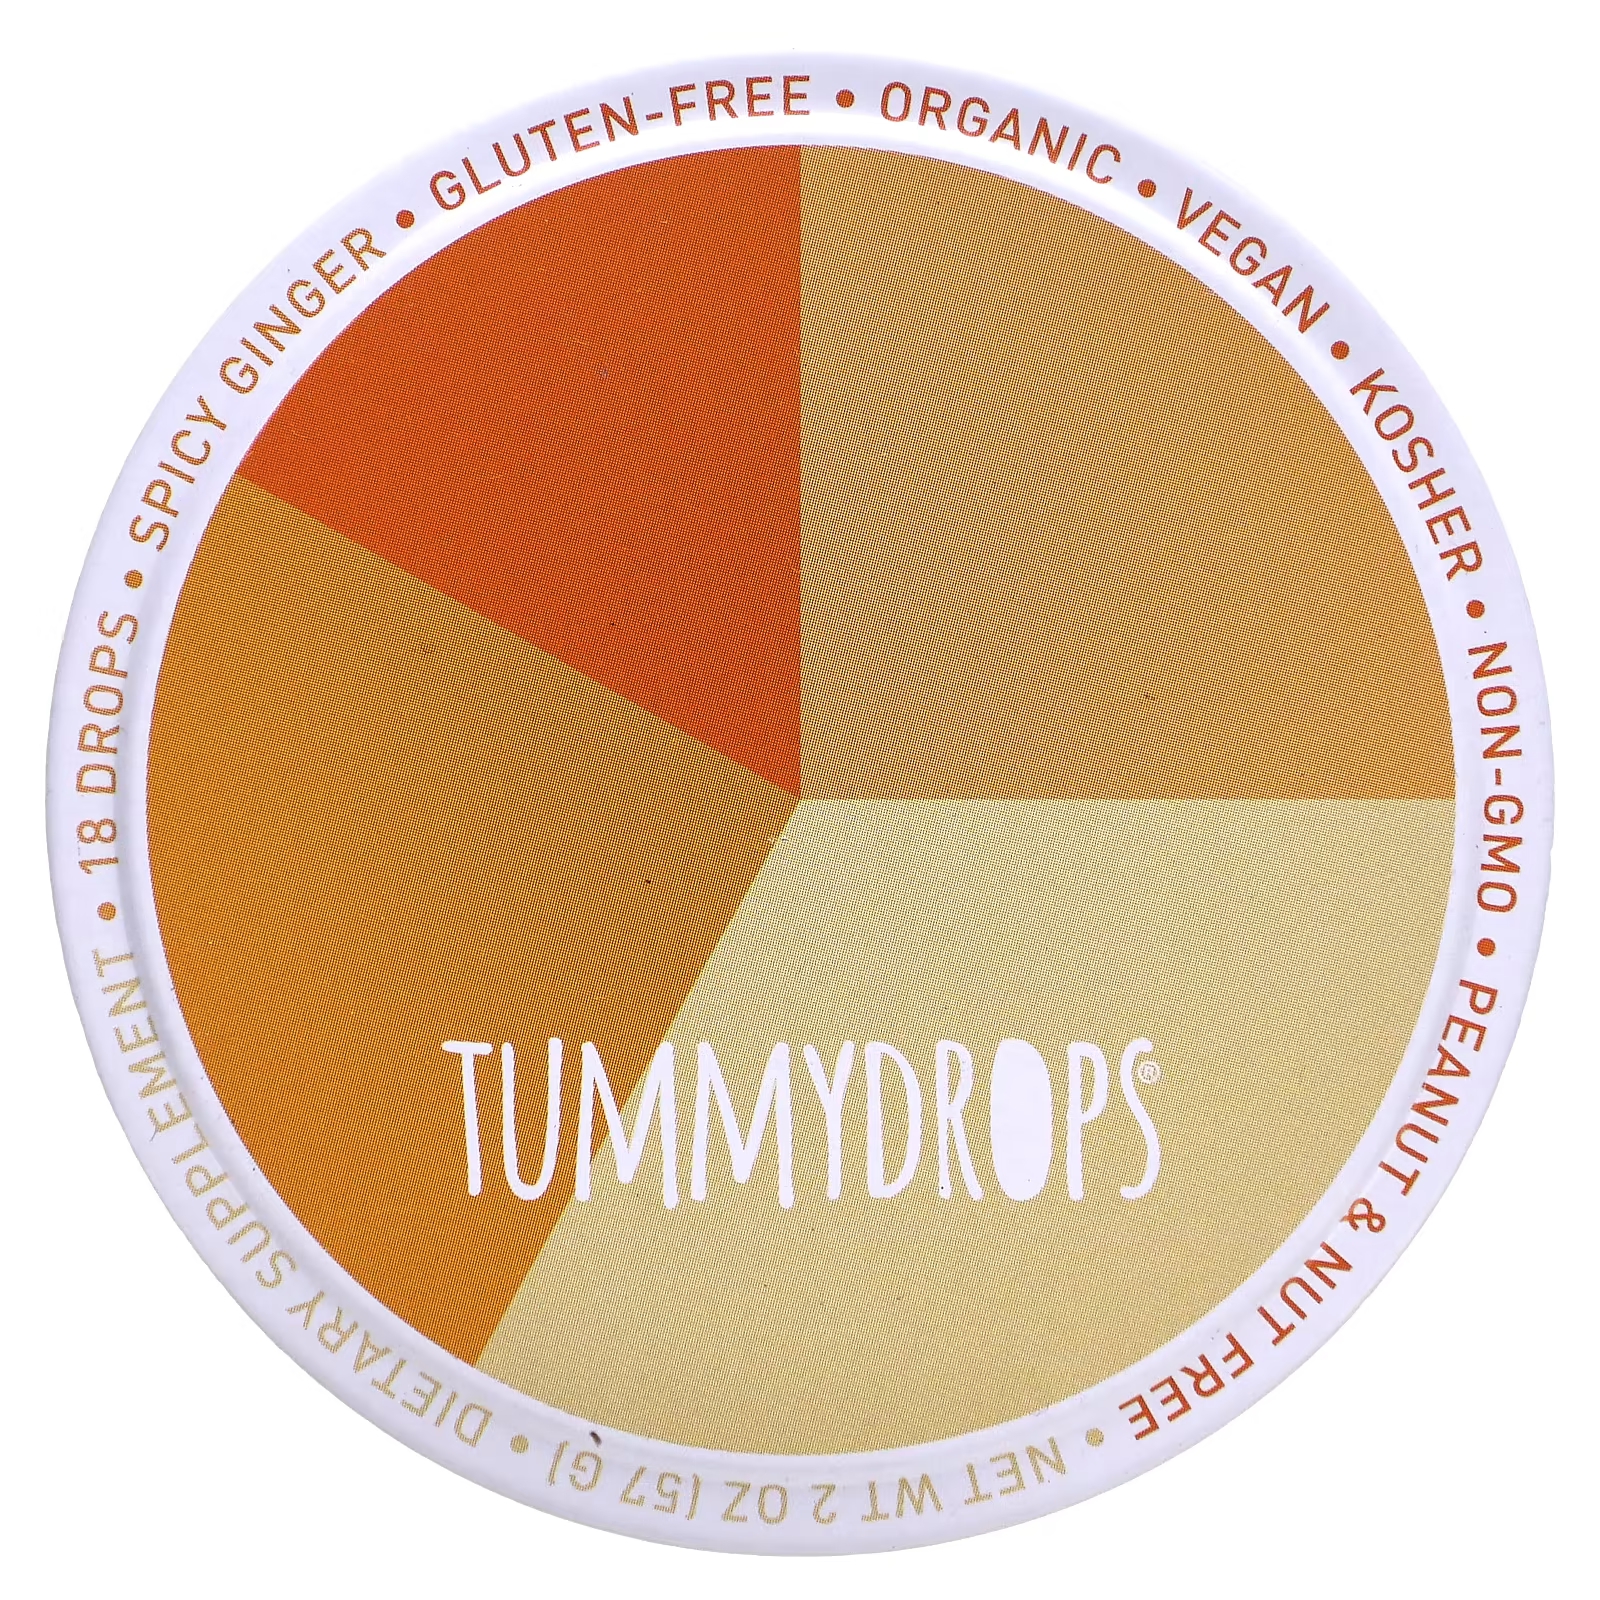 Пряный имбирь Tummydrops, 18 капель tummydrops органическая карамель тыква имбирь 18 капель 57 г 2 унции